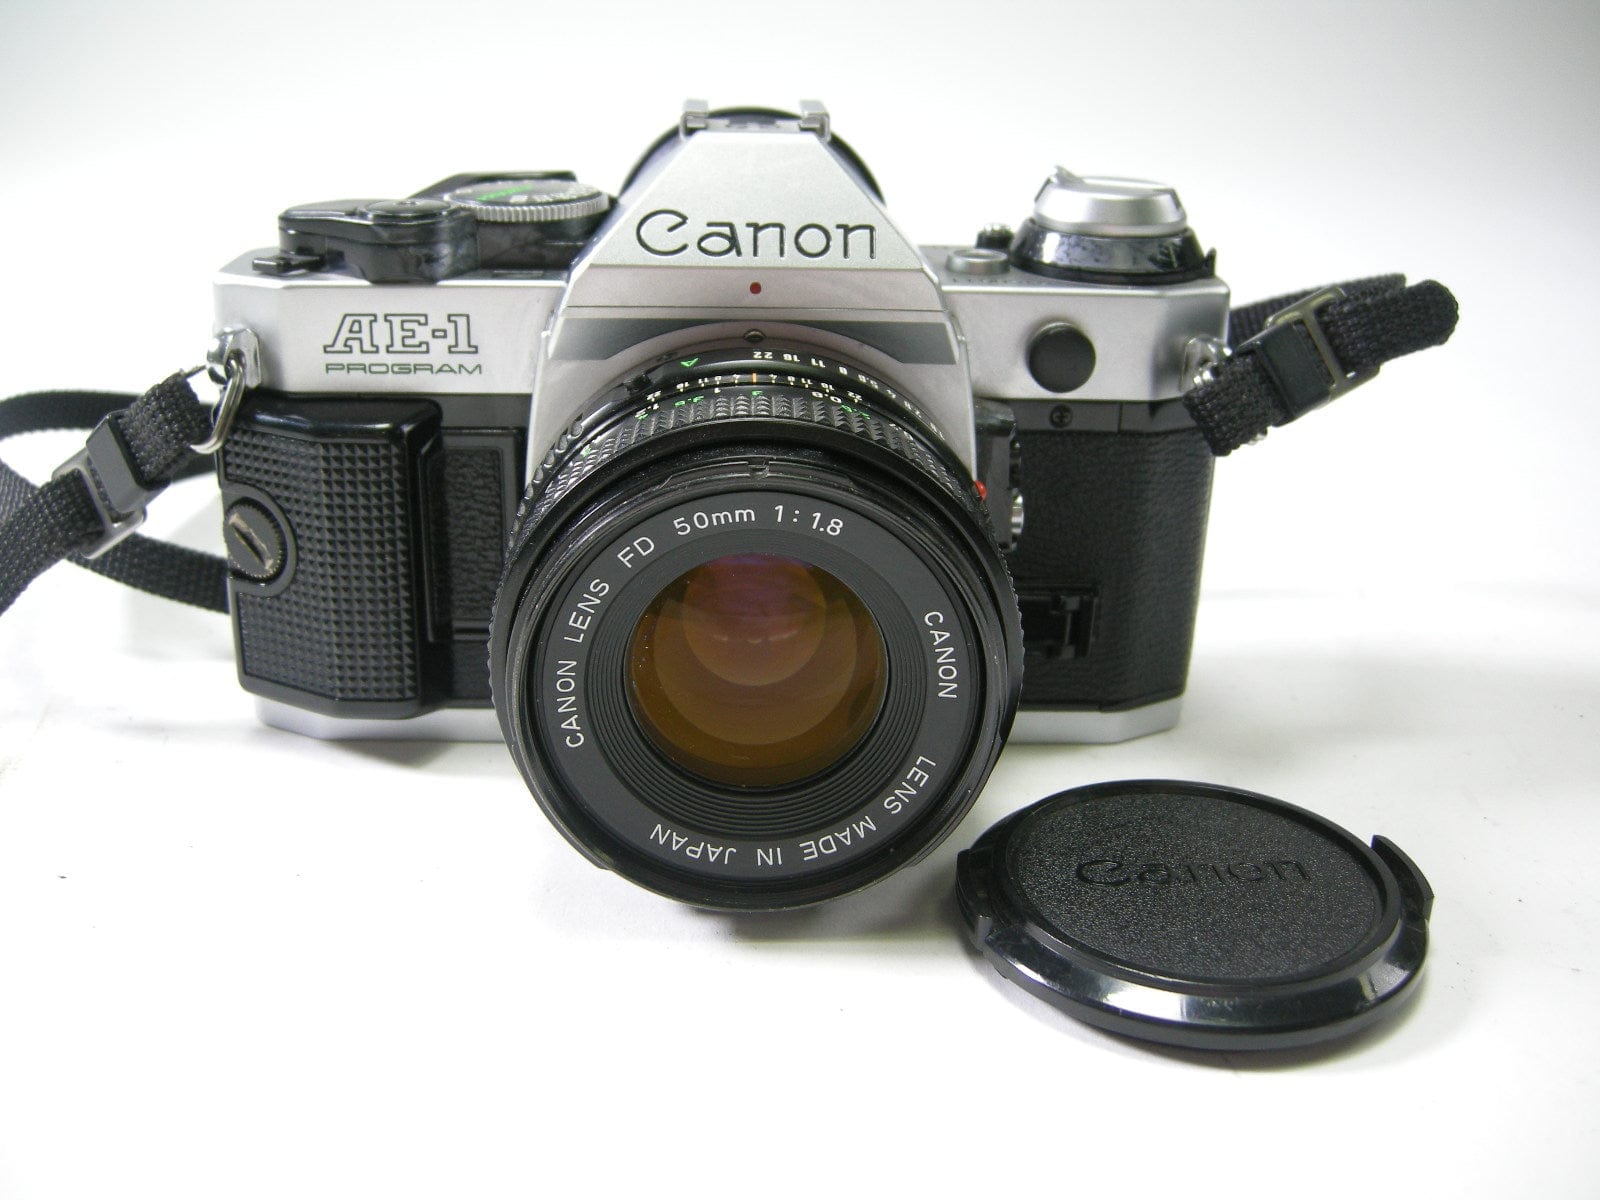 Canon AE-1 program ブラック 50mm f1.8-